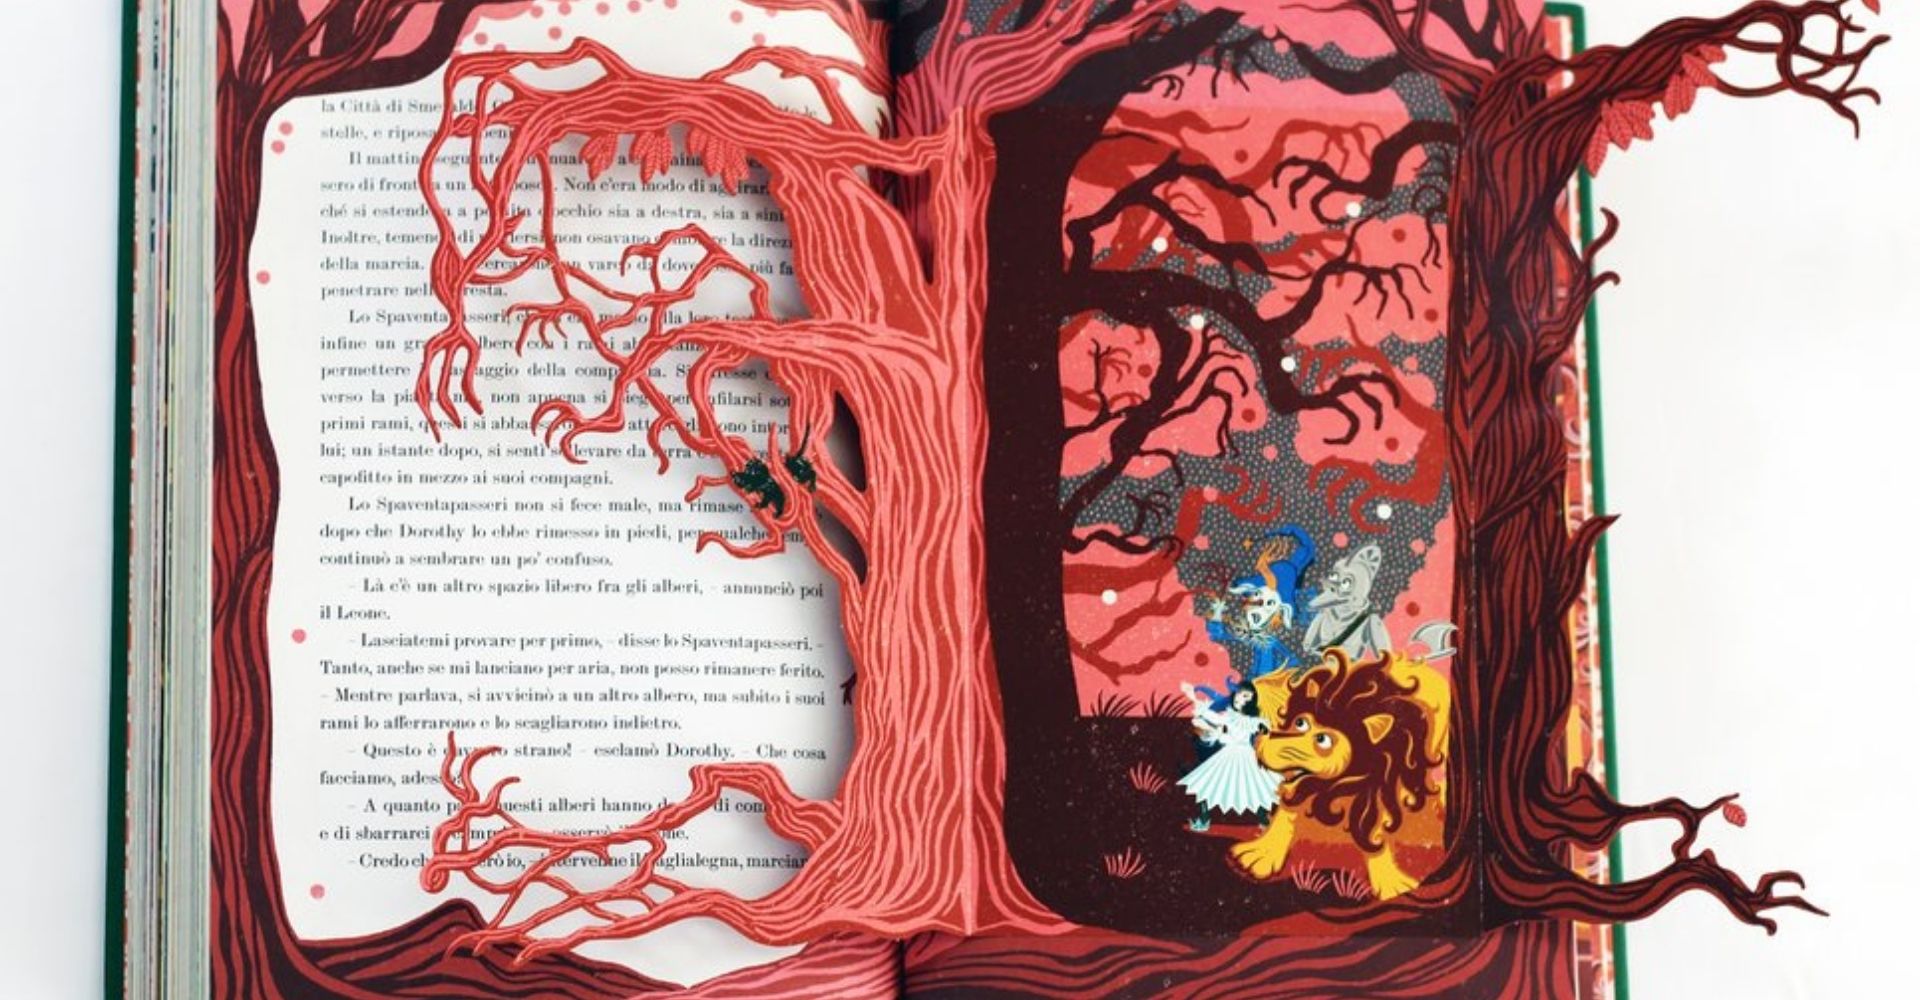 Dettaglio di un'illustrazione contenuta nel libro Il meraviglioso mago di Oz pubblicato da L'ippocampo edizioni